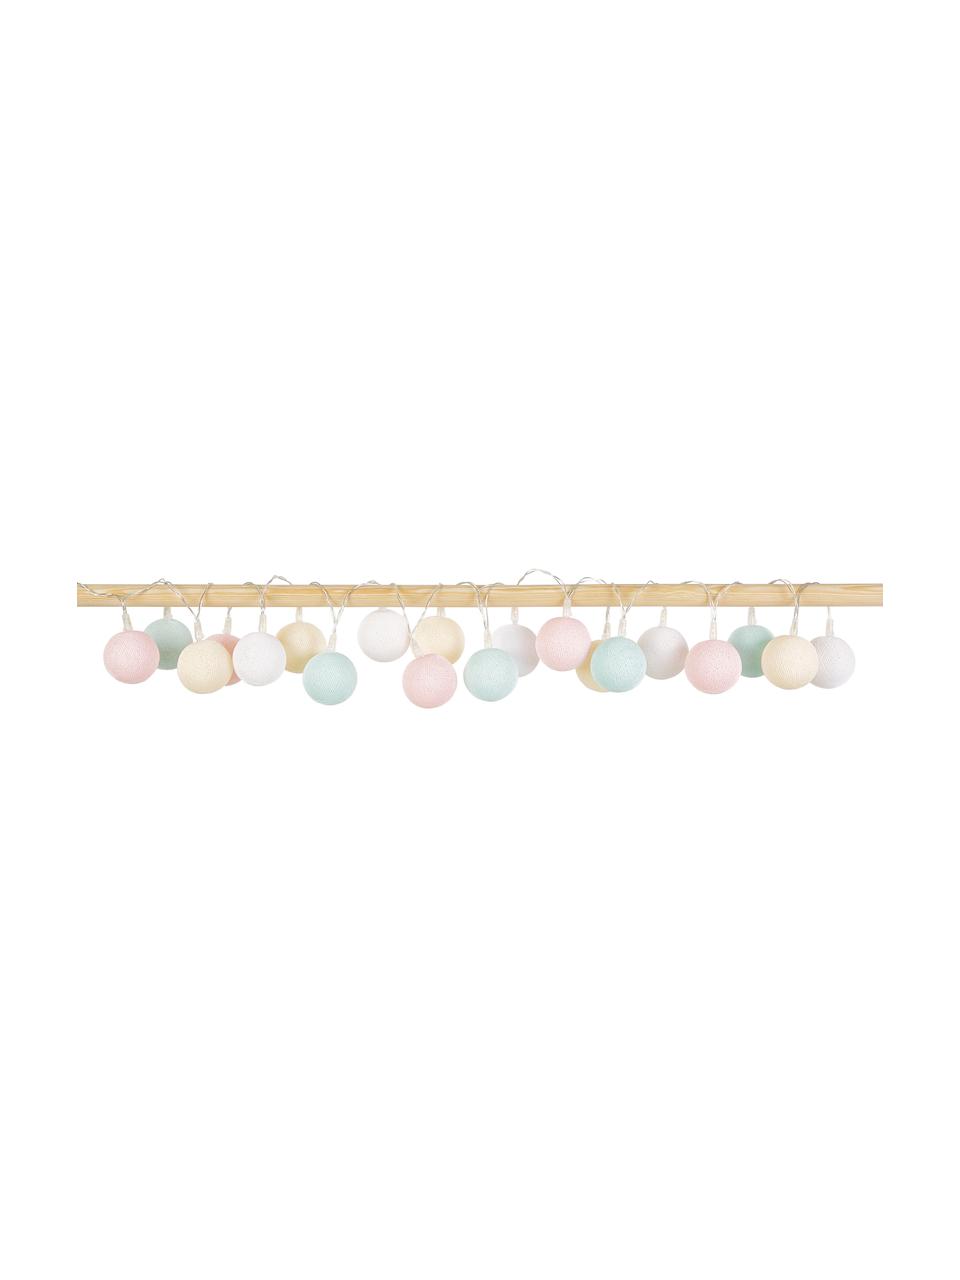 Guirlande lumineuse LED Colorain, 378 cm, 20 lampions, Blanc, crème, rose blush, bleu ciel, long. 378 cm